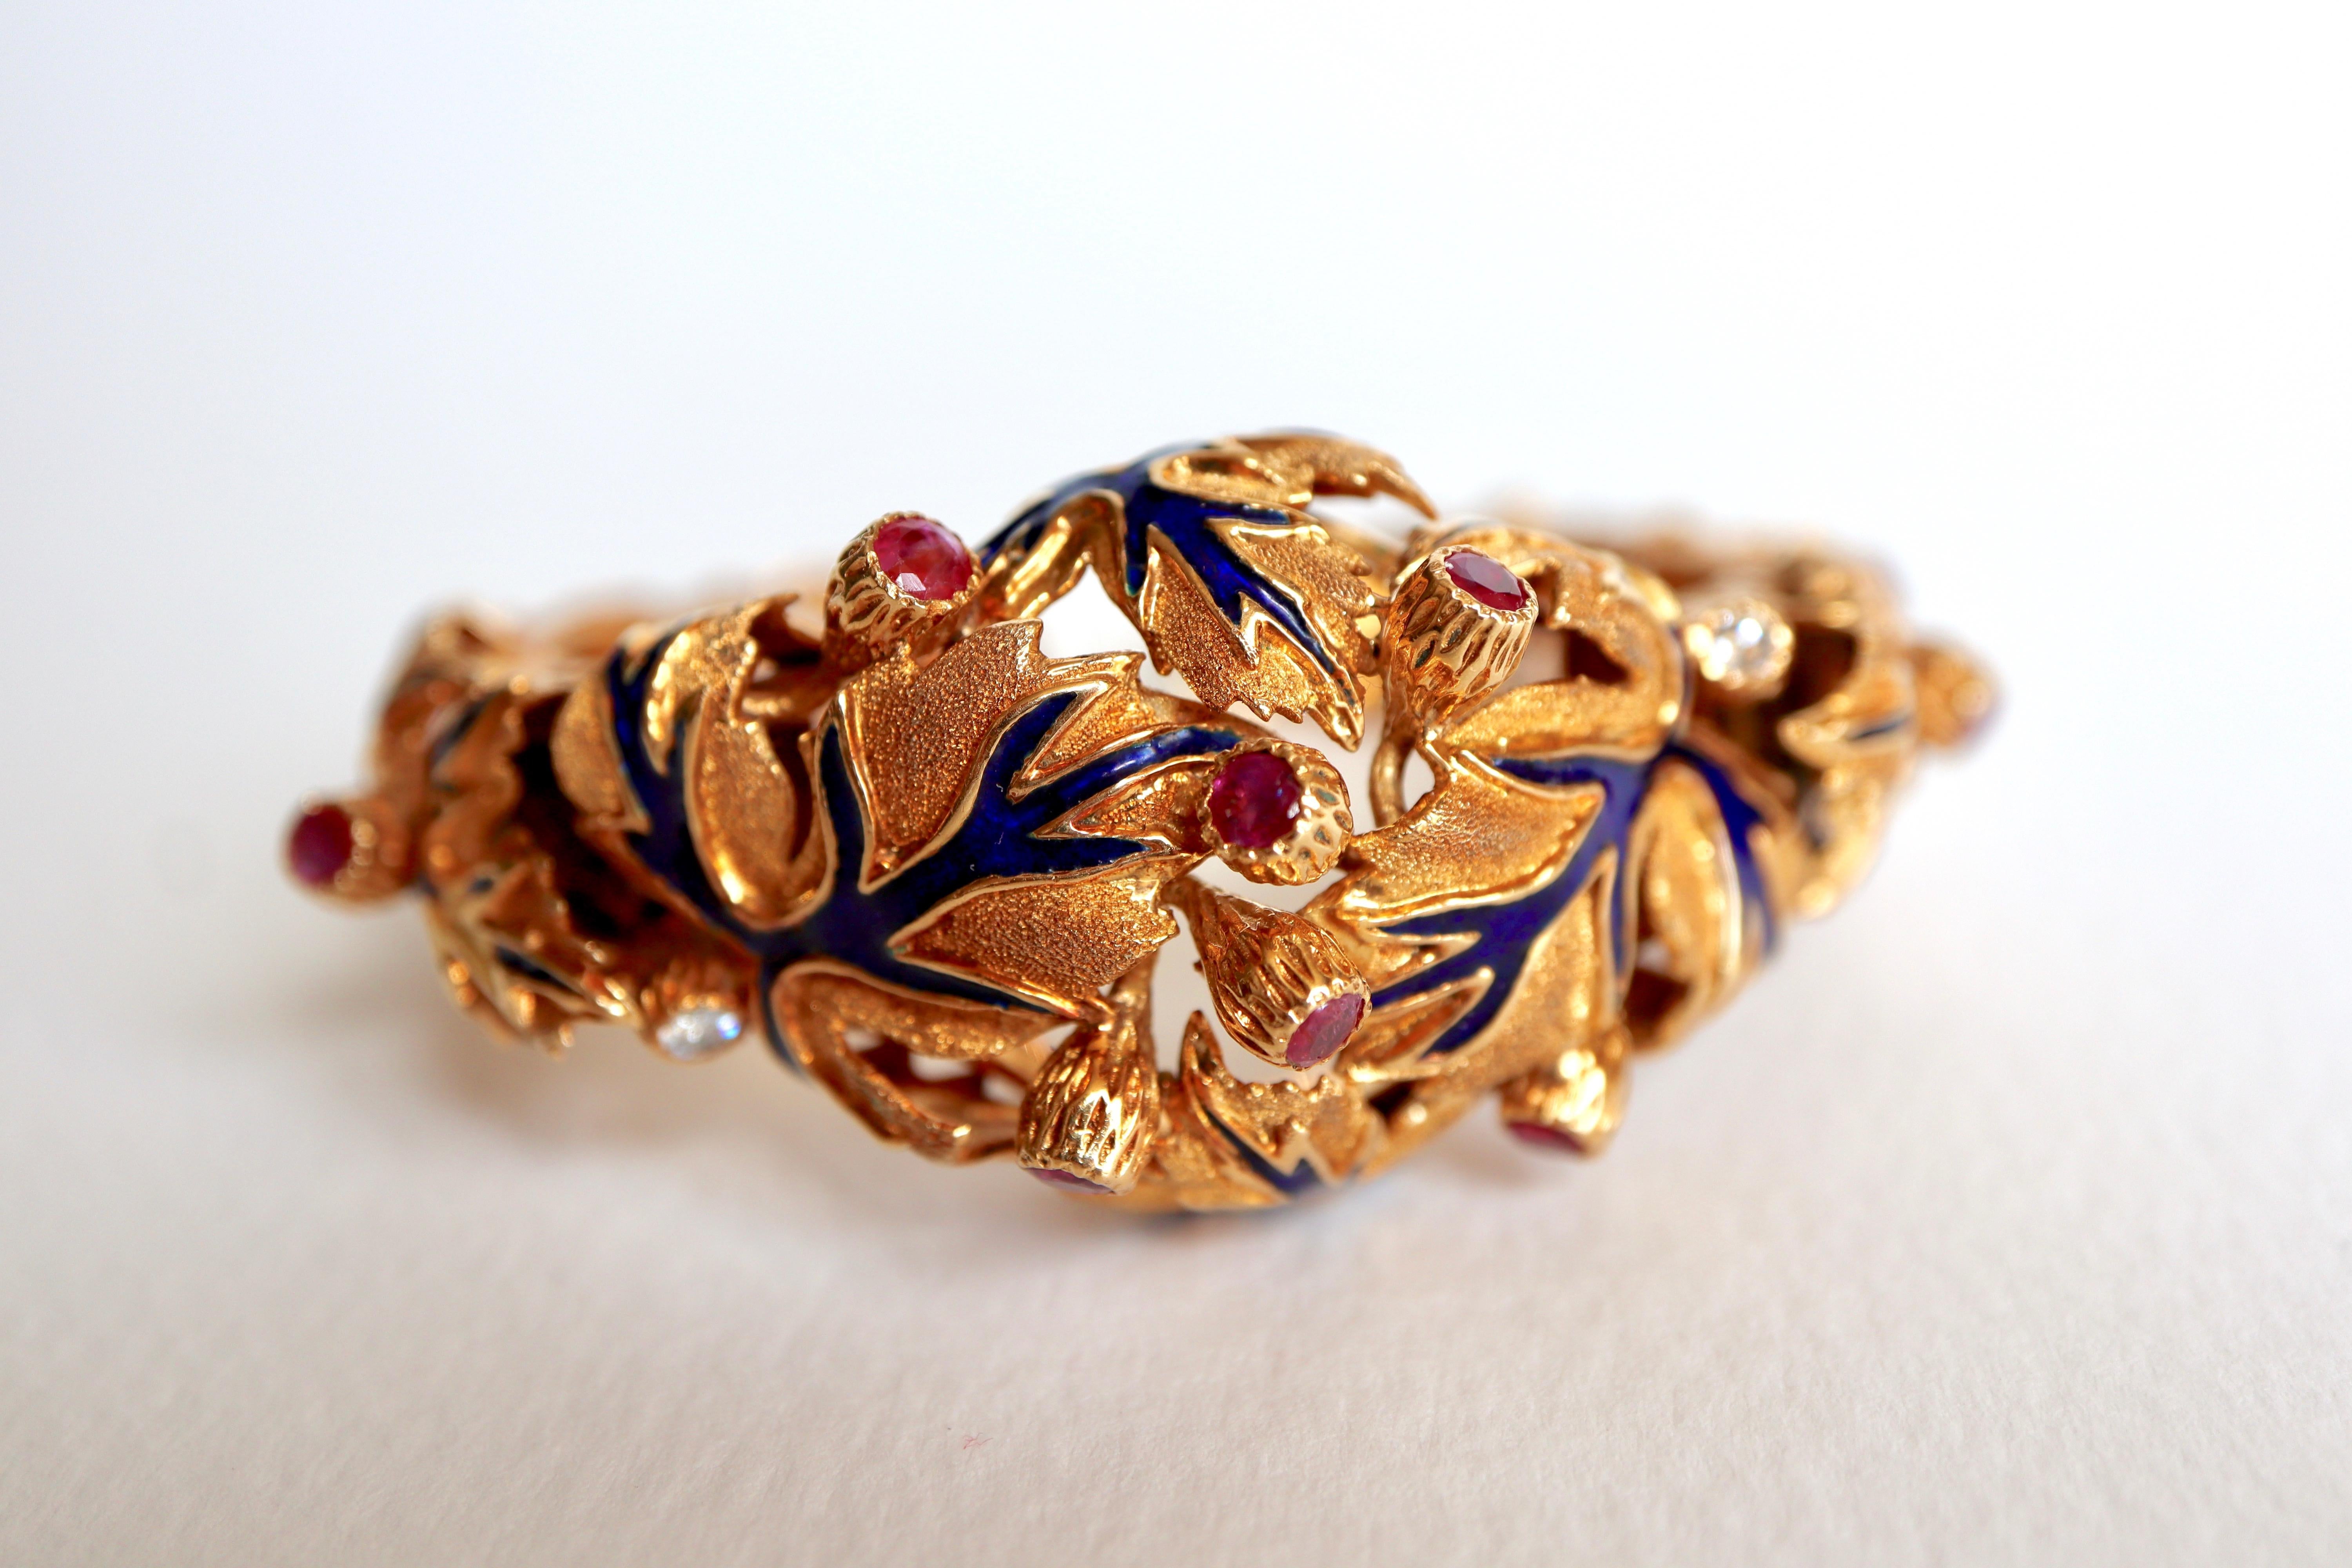 Zolotas Bracelet en or jaune 18 kt ciselé souligné d'un motif de feuilles en émail bleu ponctué de boutons de fleurs sertis de rubis et de diamants. Le bracelet est articulé en deux endroits grâce à un mécanisme à ressort qui permet de le porter au